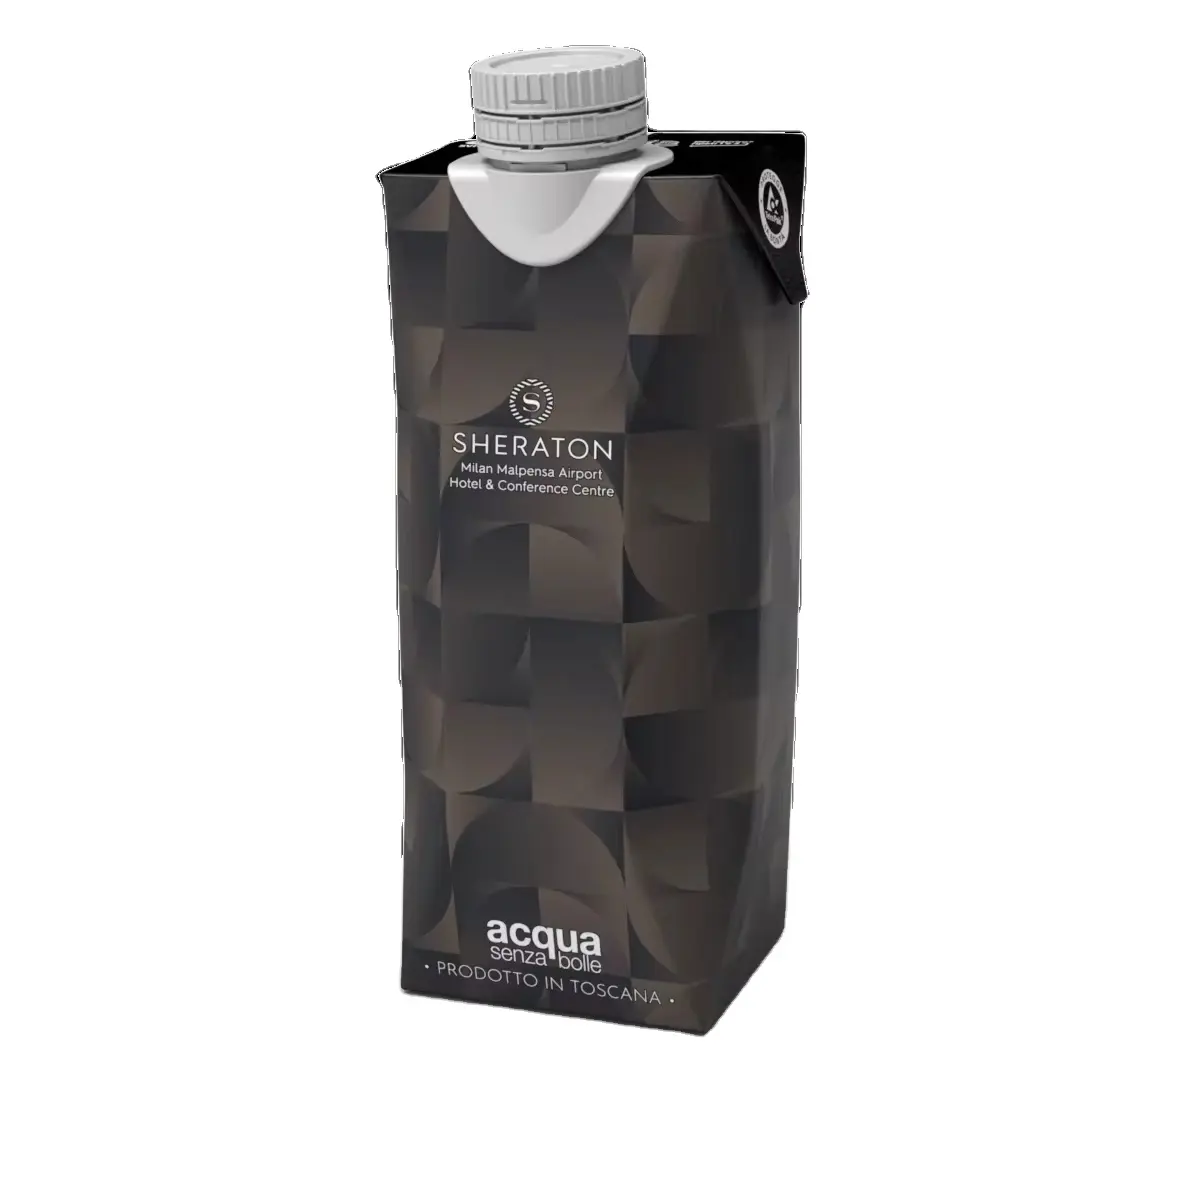 LY Company Outdoor Trinkwasser Eigenmarke Premium-Wasser in Karton 500 ml Made in Italy